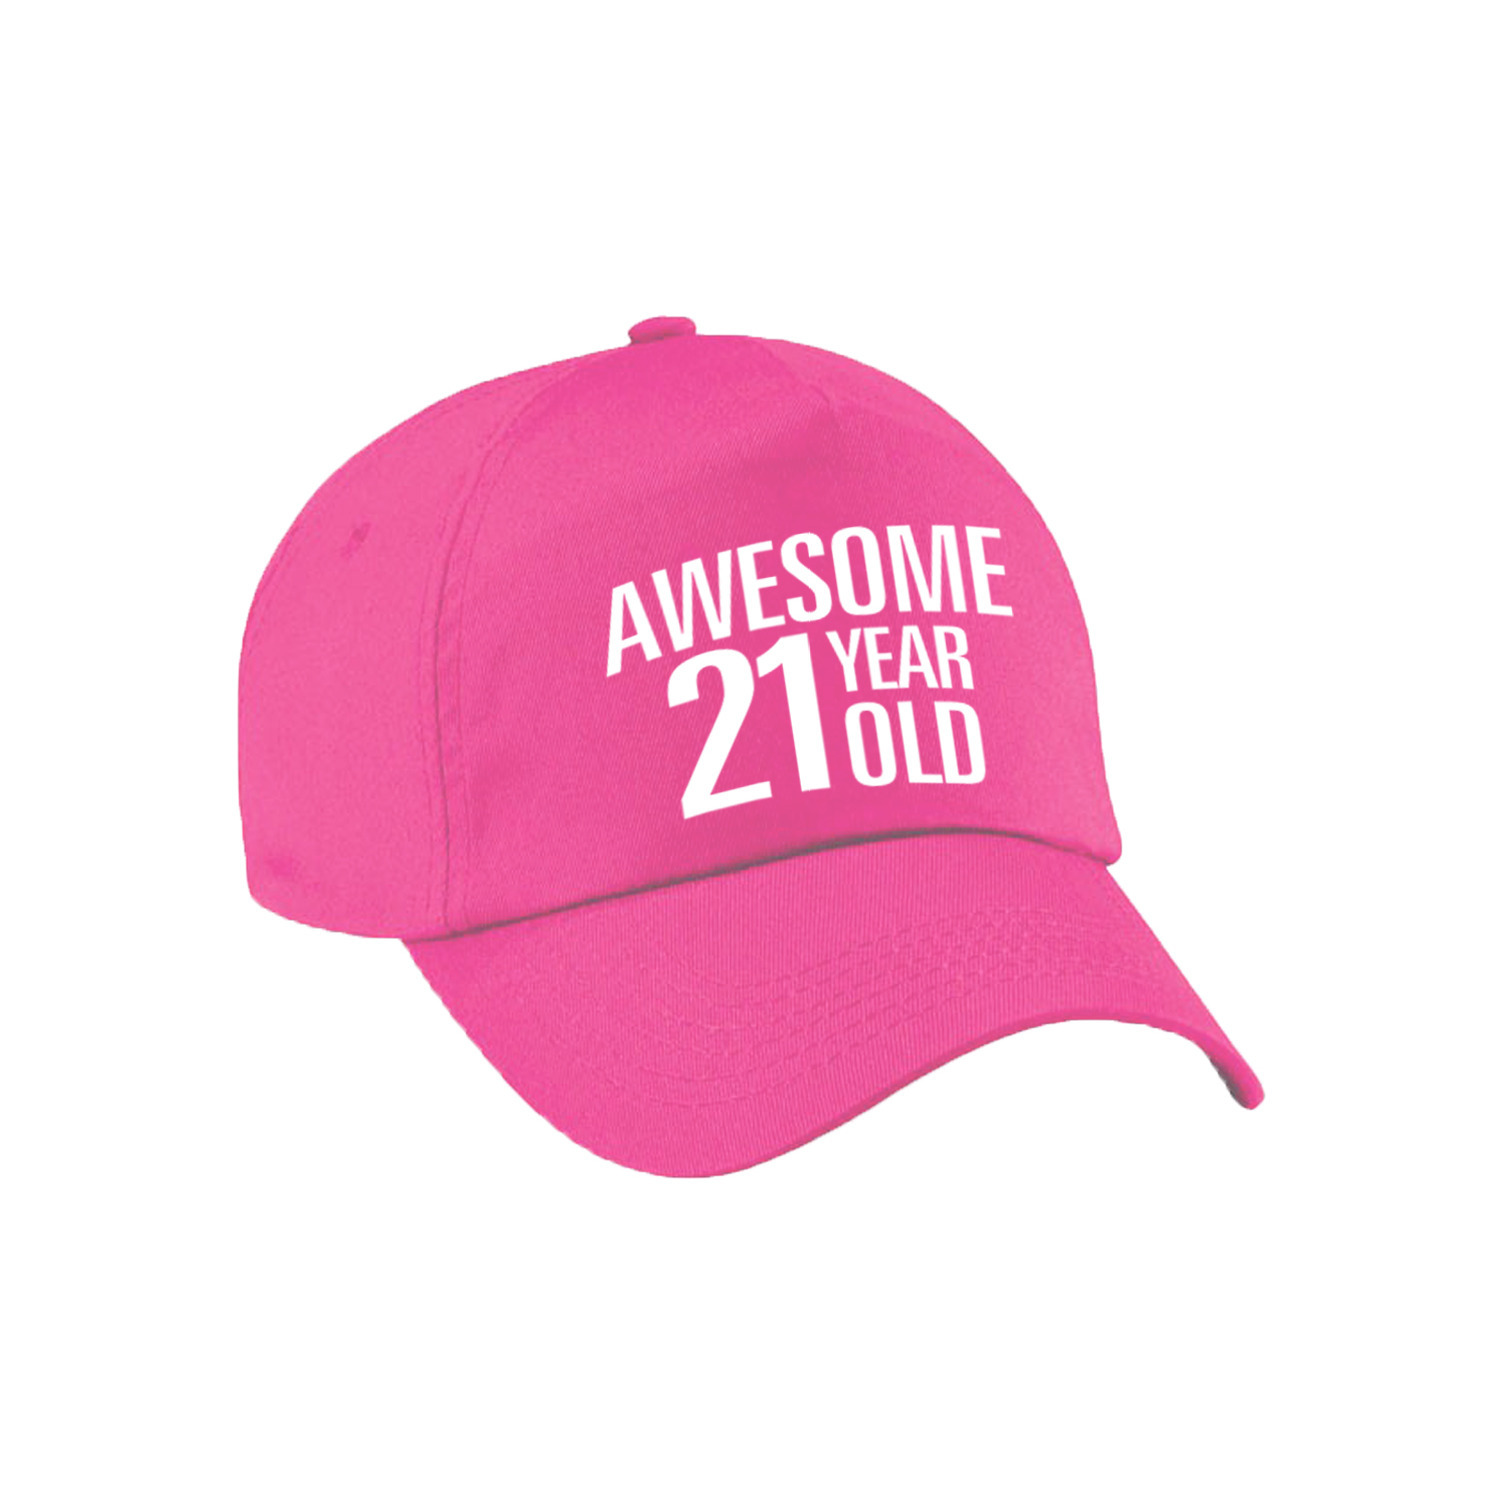 Awesome 21 year old verjaardag pet / cap roze voor dames en heren